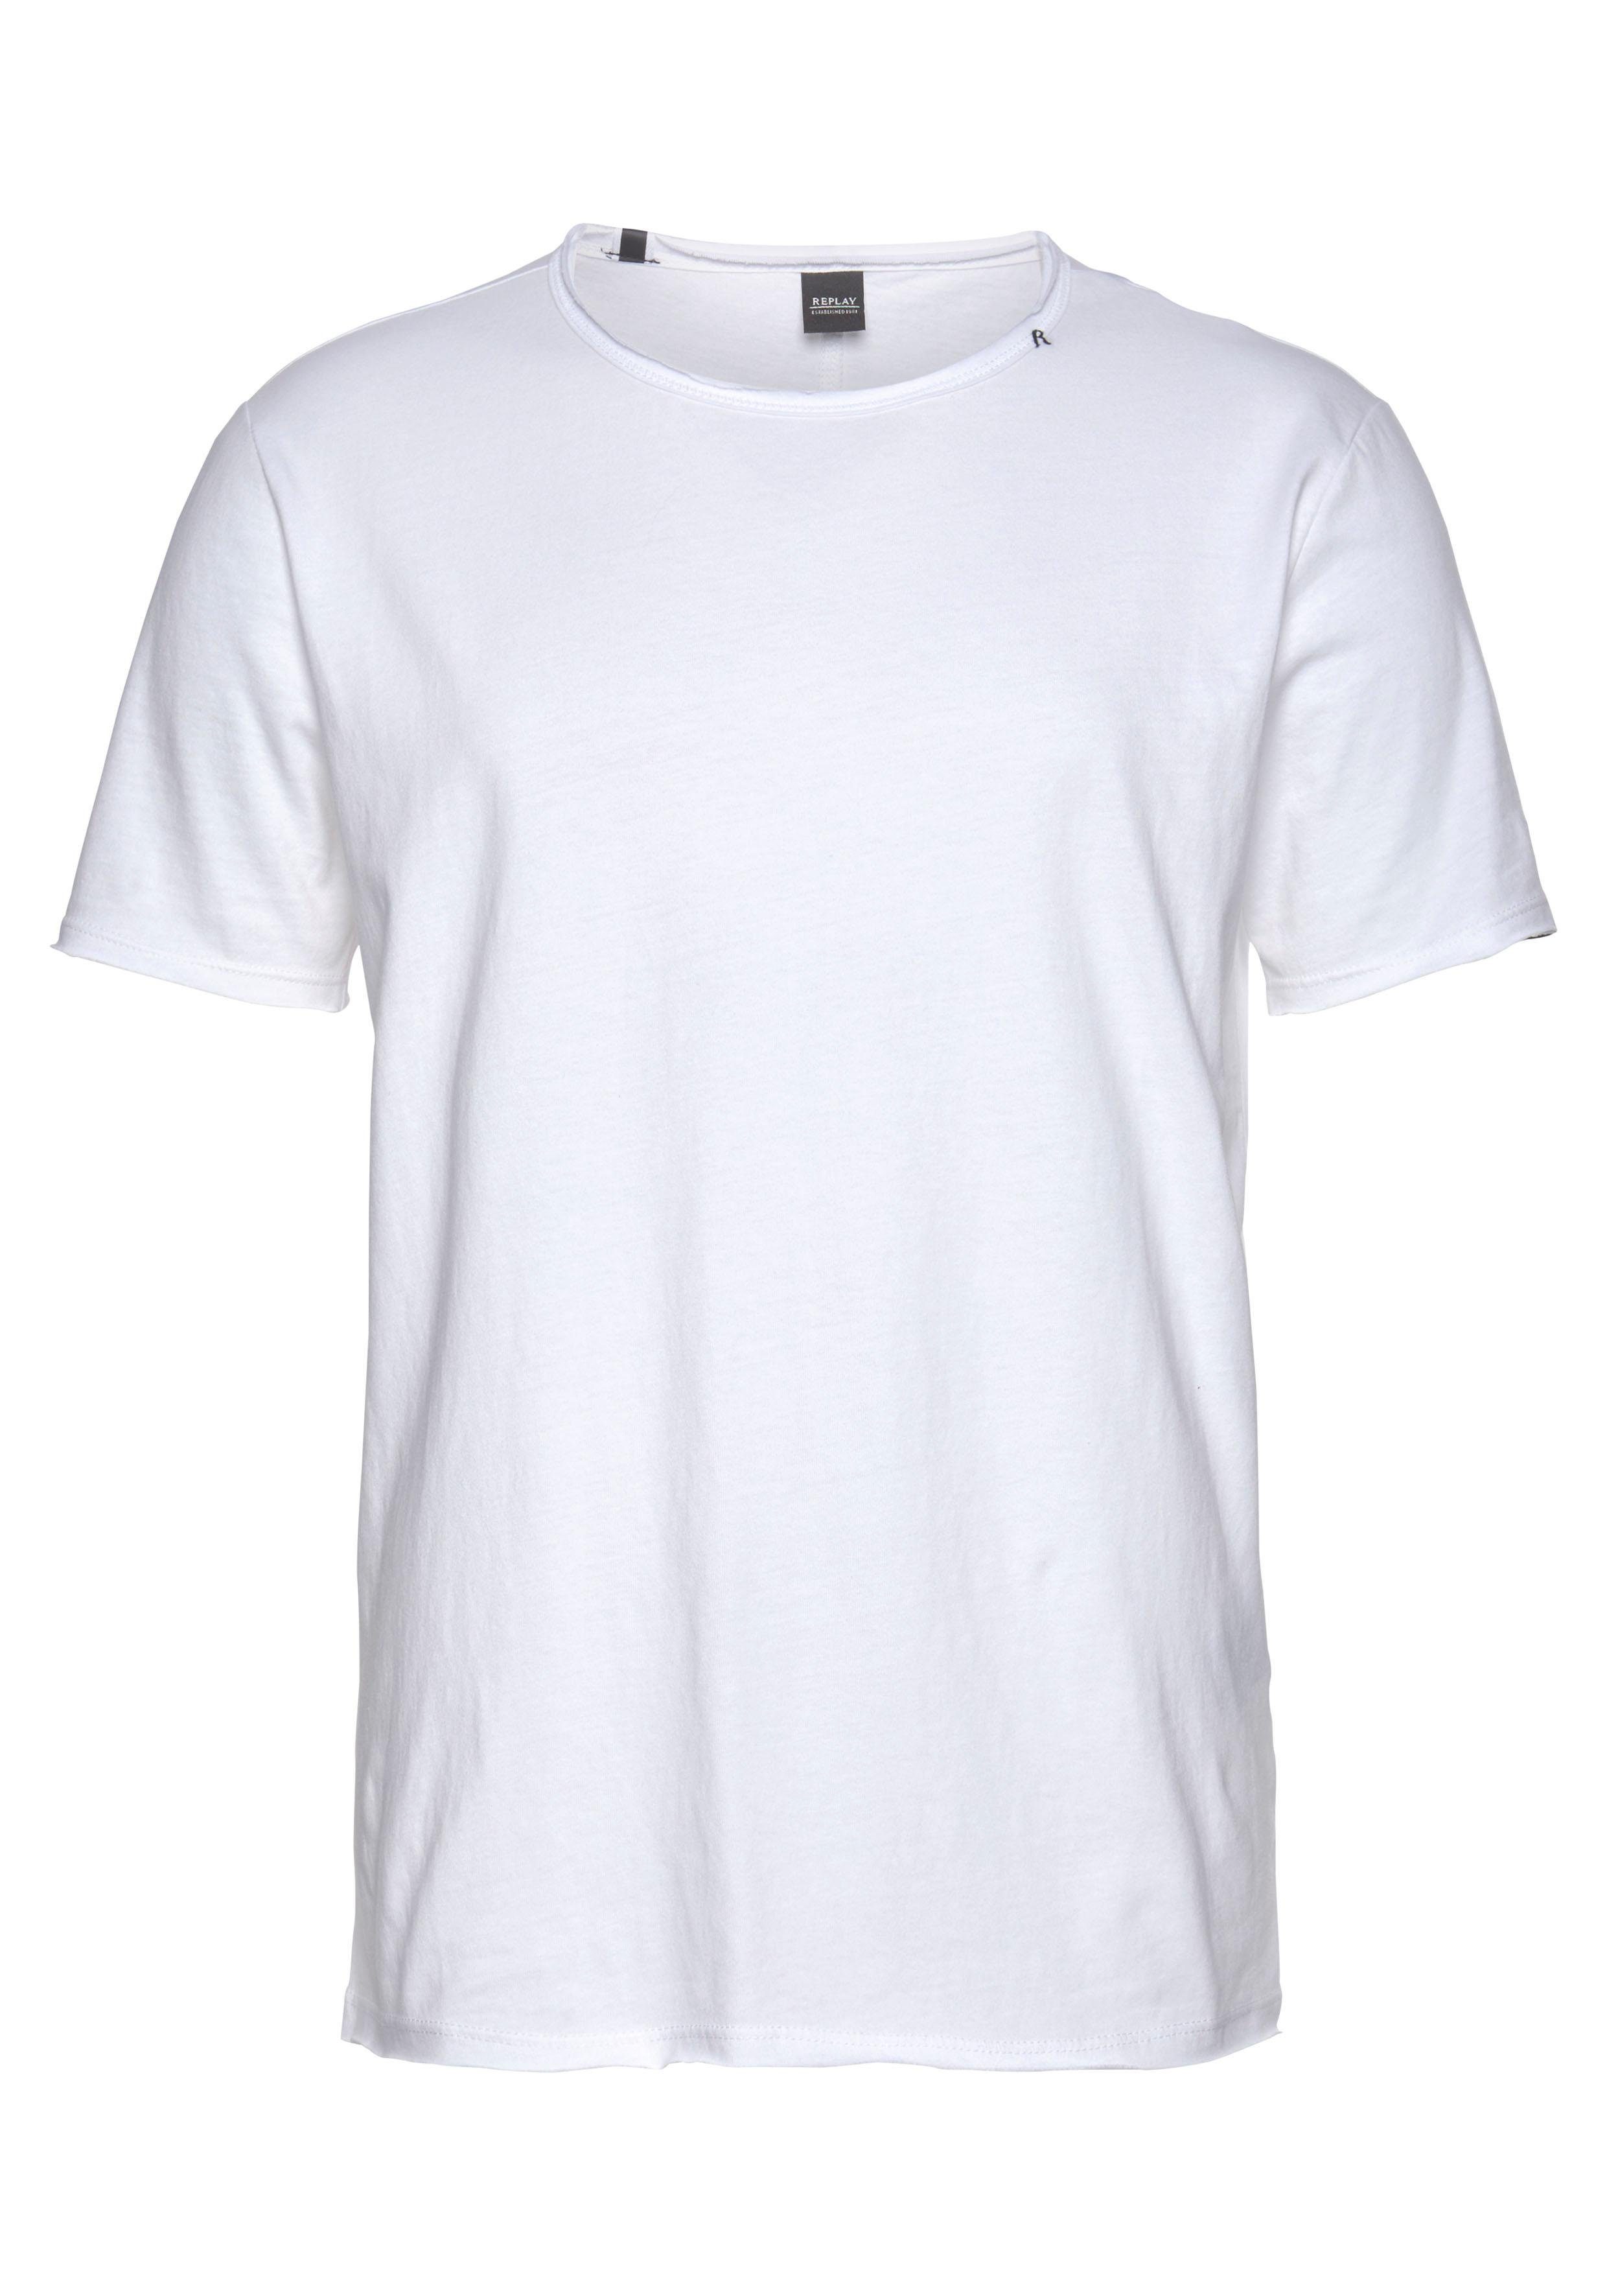 Replay Kanten offene T-Shirt weiß